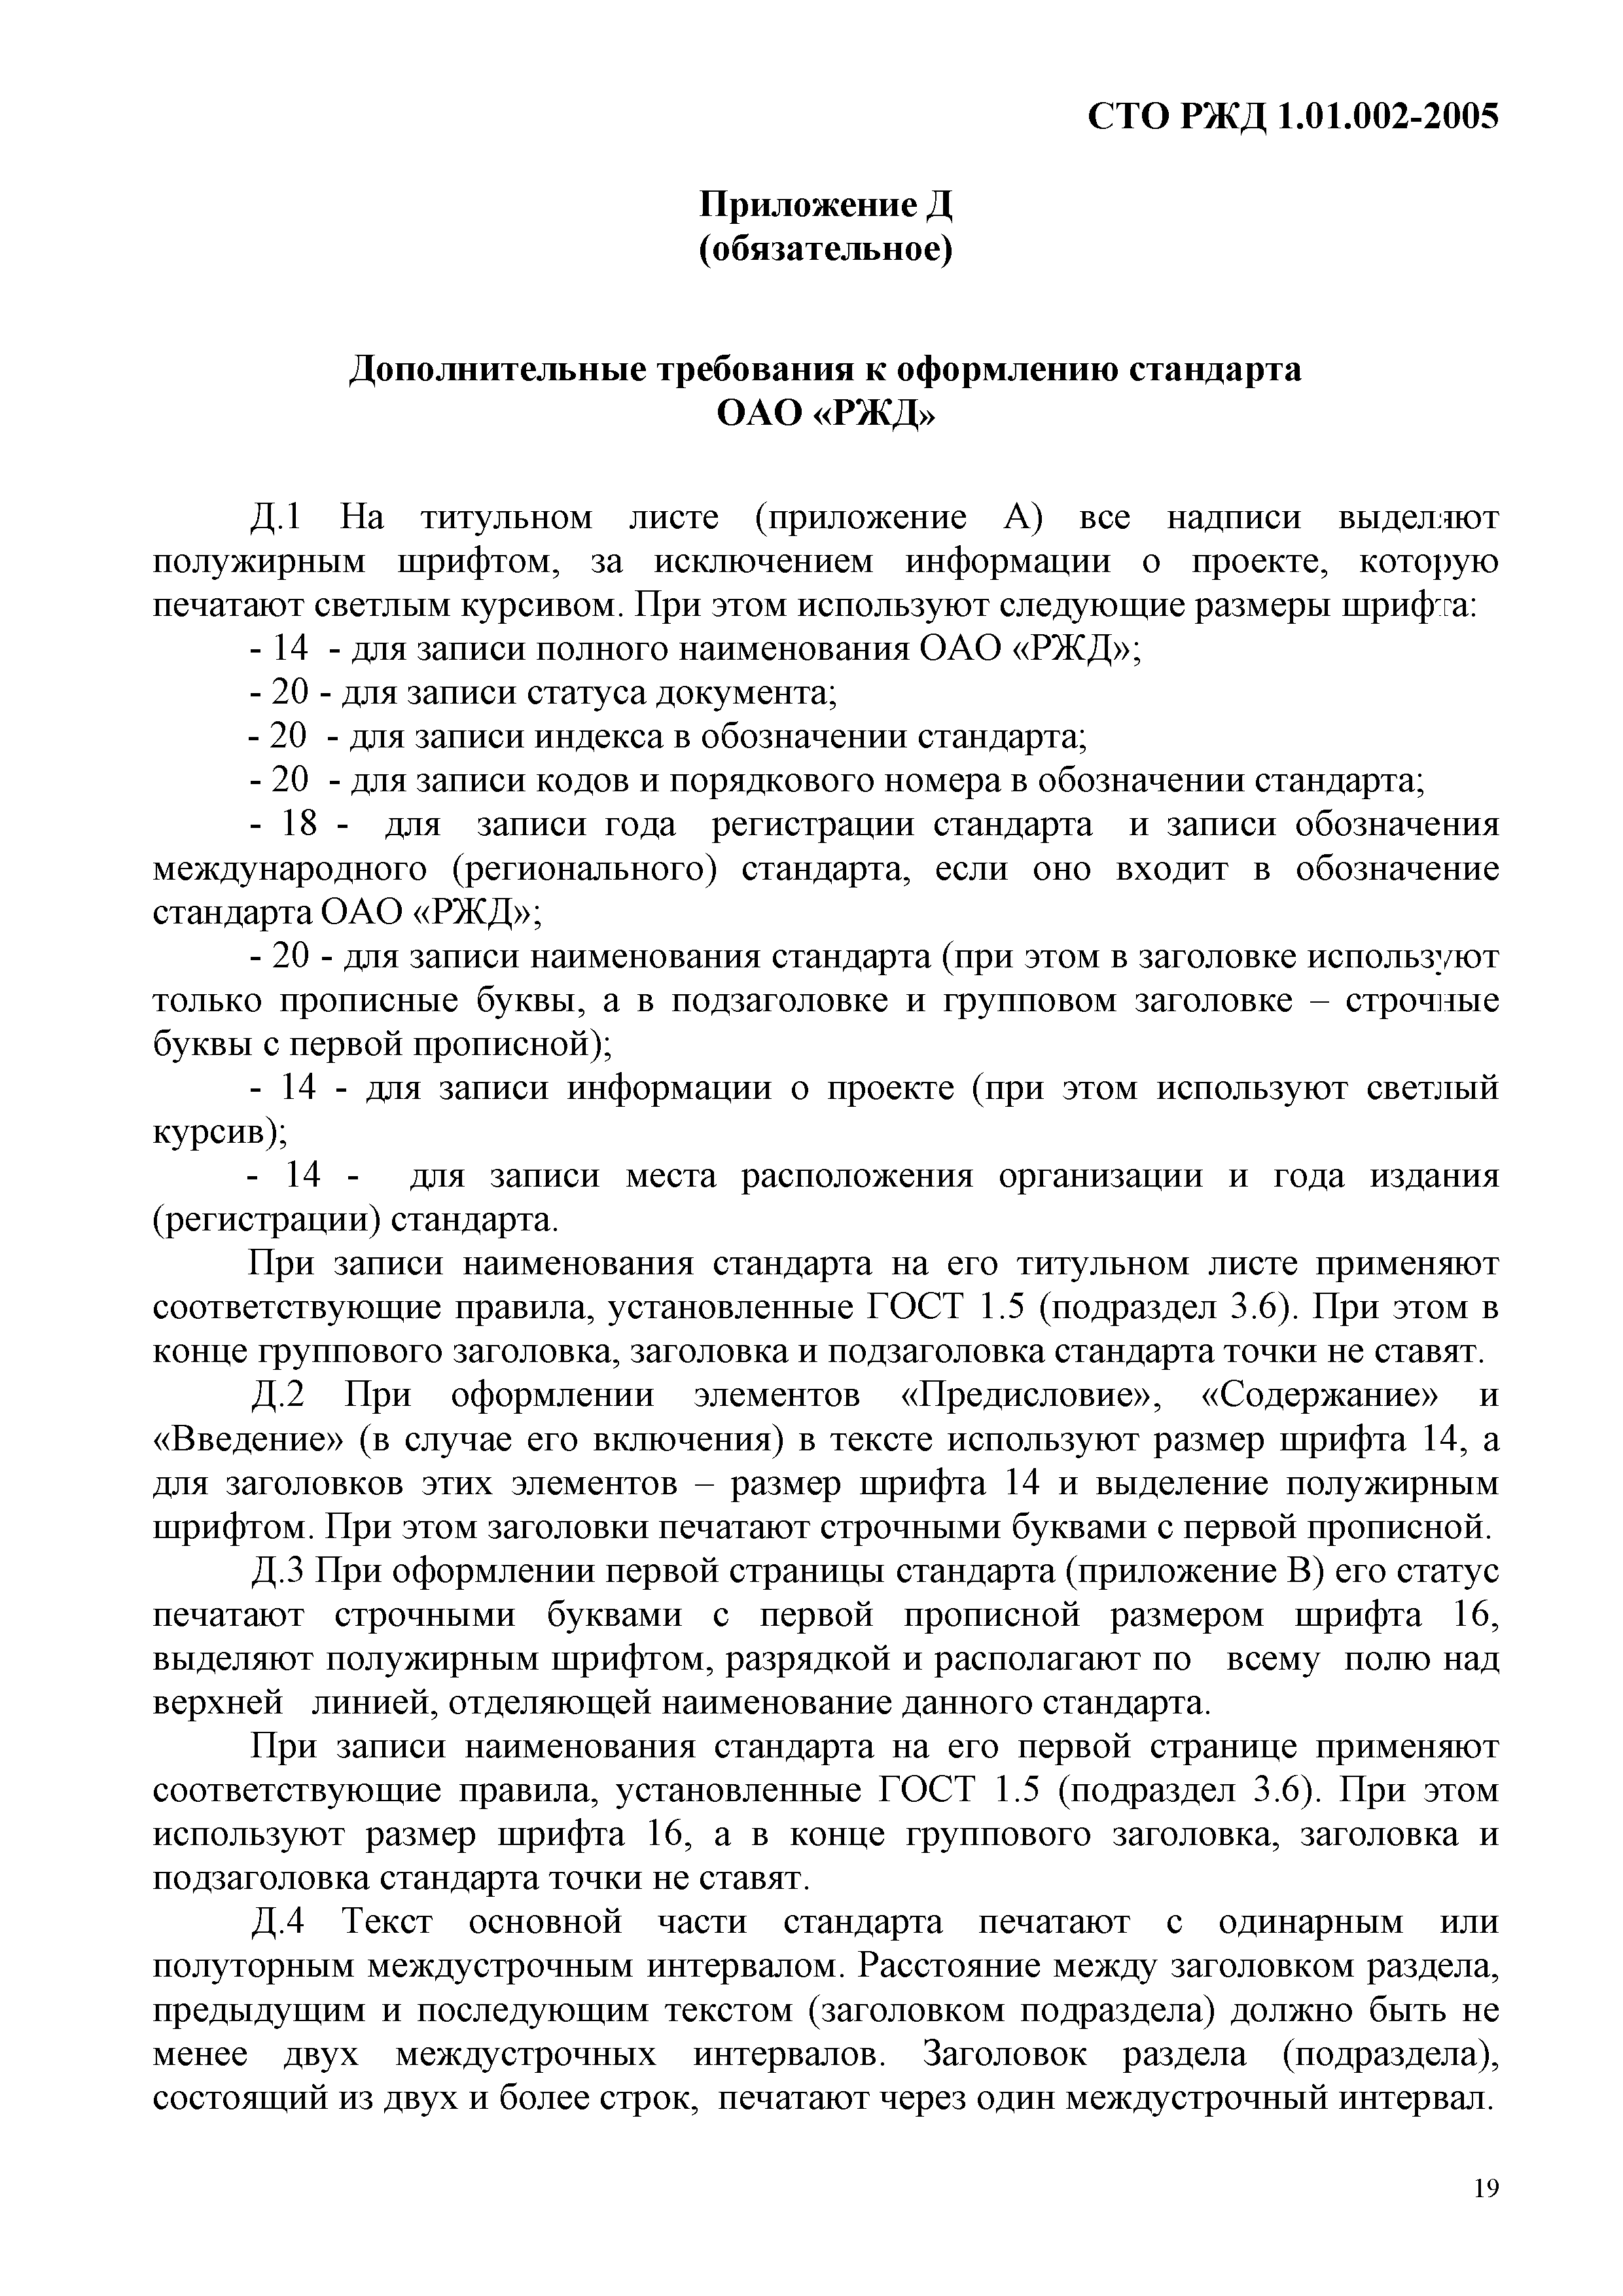 СТО РЖД 1.01.002-2005